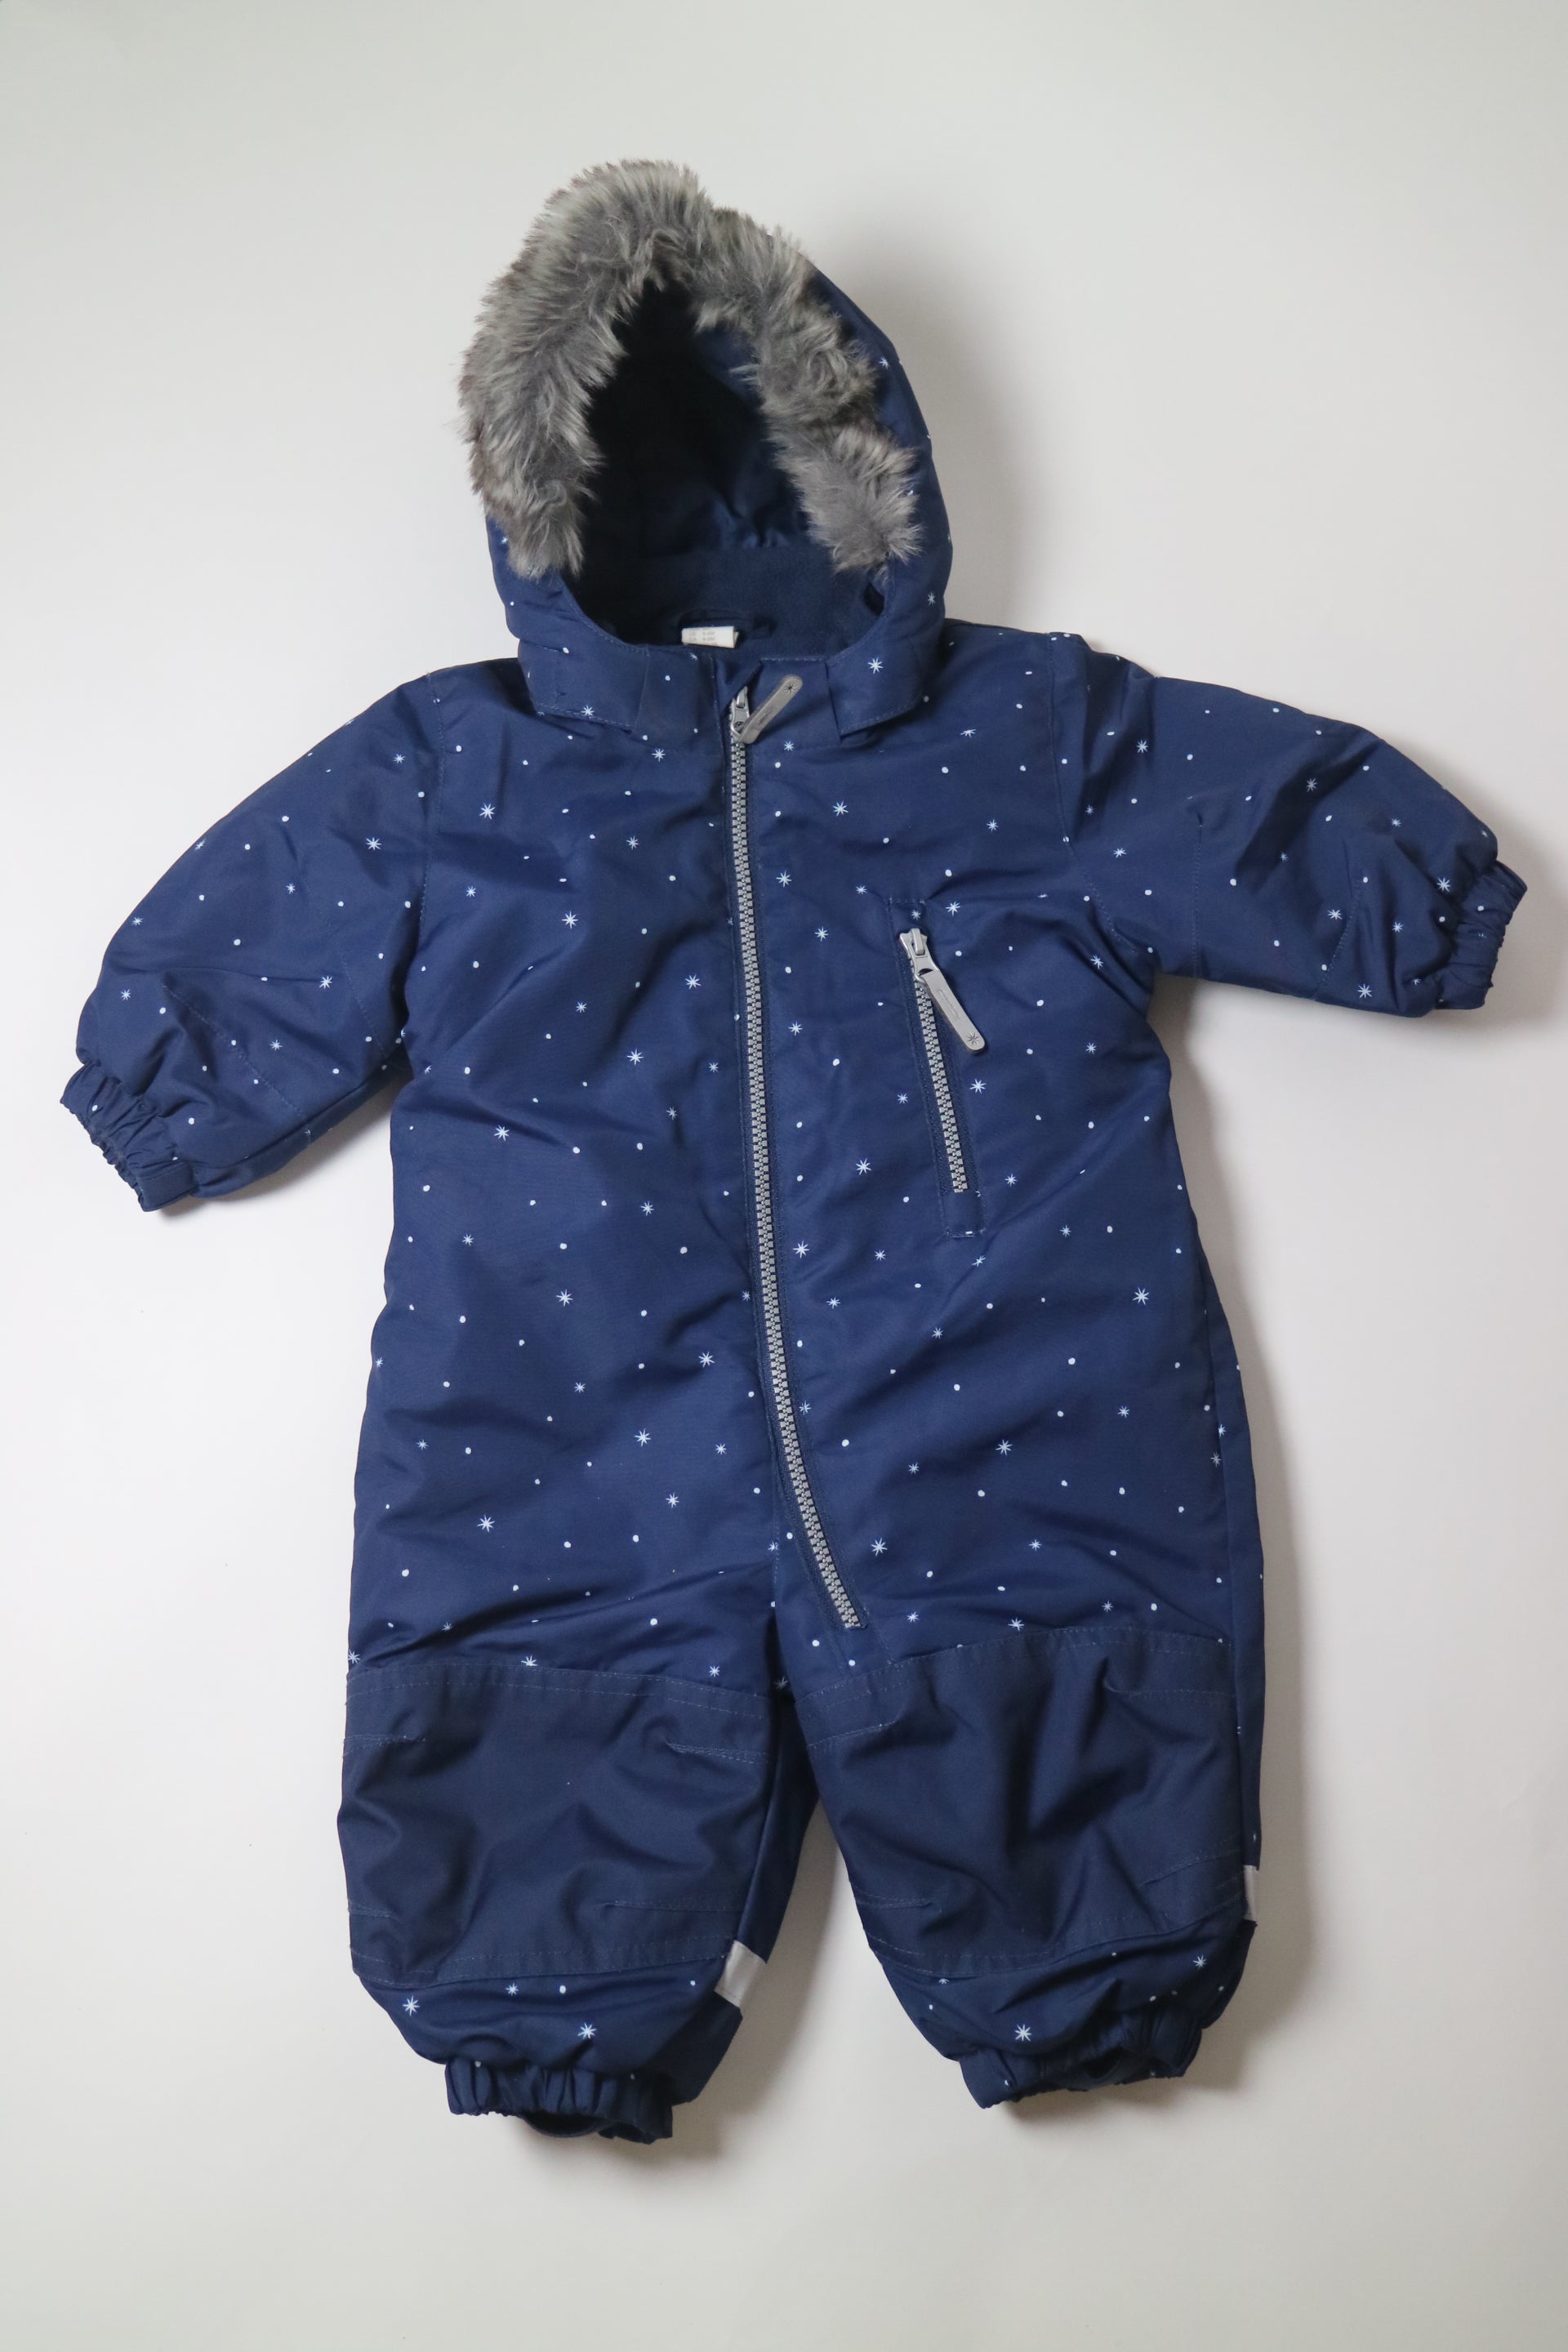 Marinblå vinteroverall med vita stjärnor och prickar från H&M 